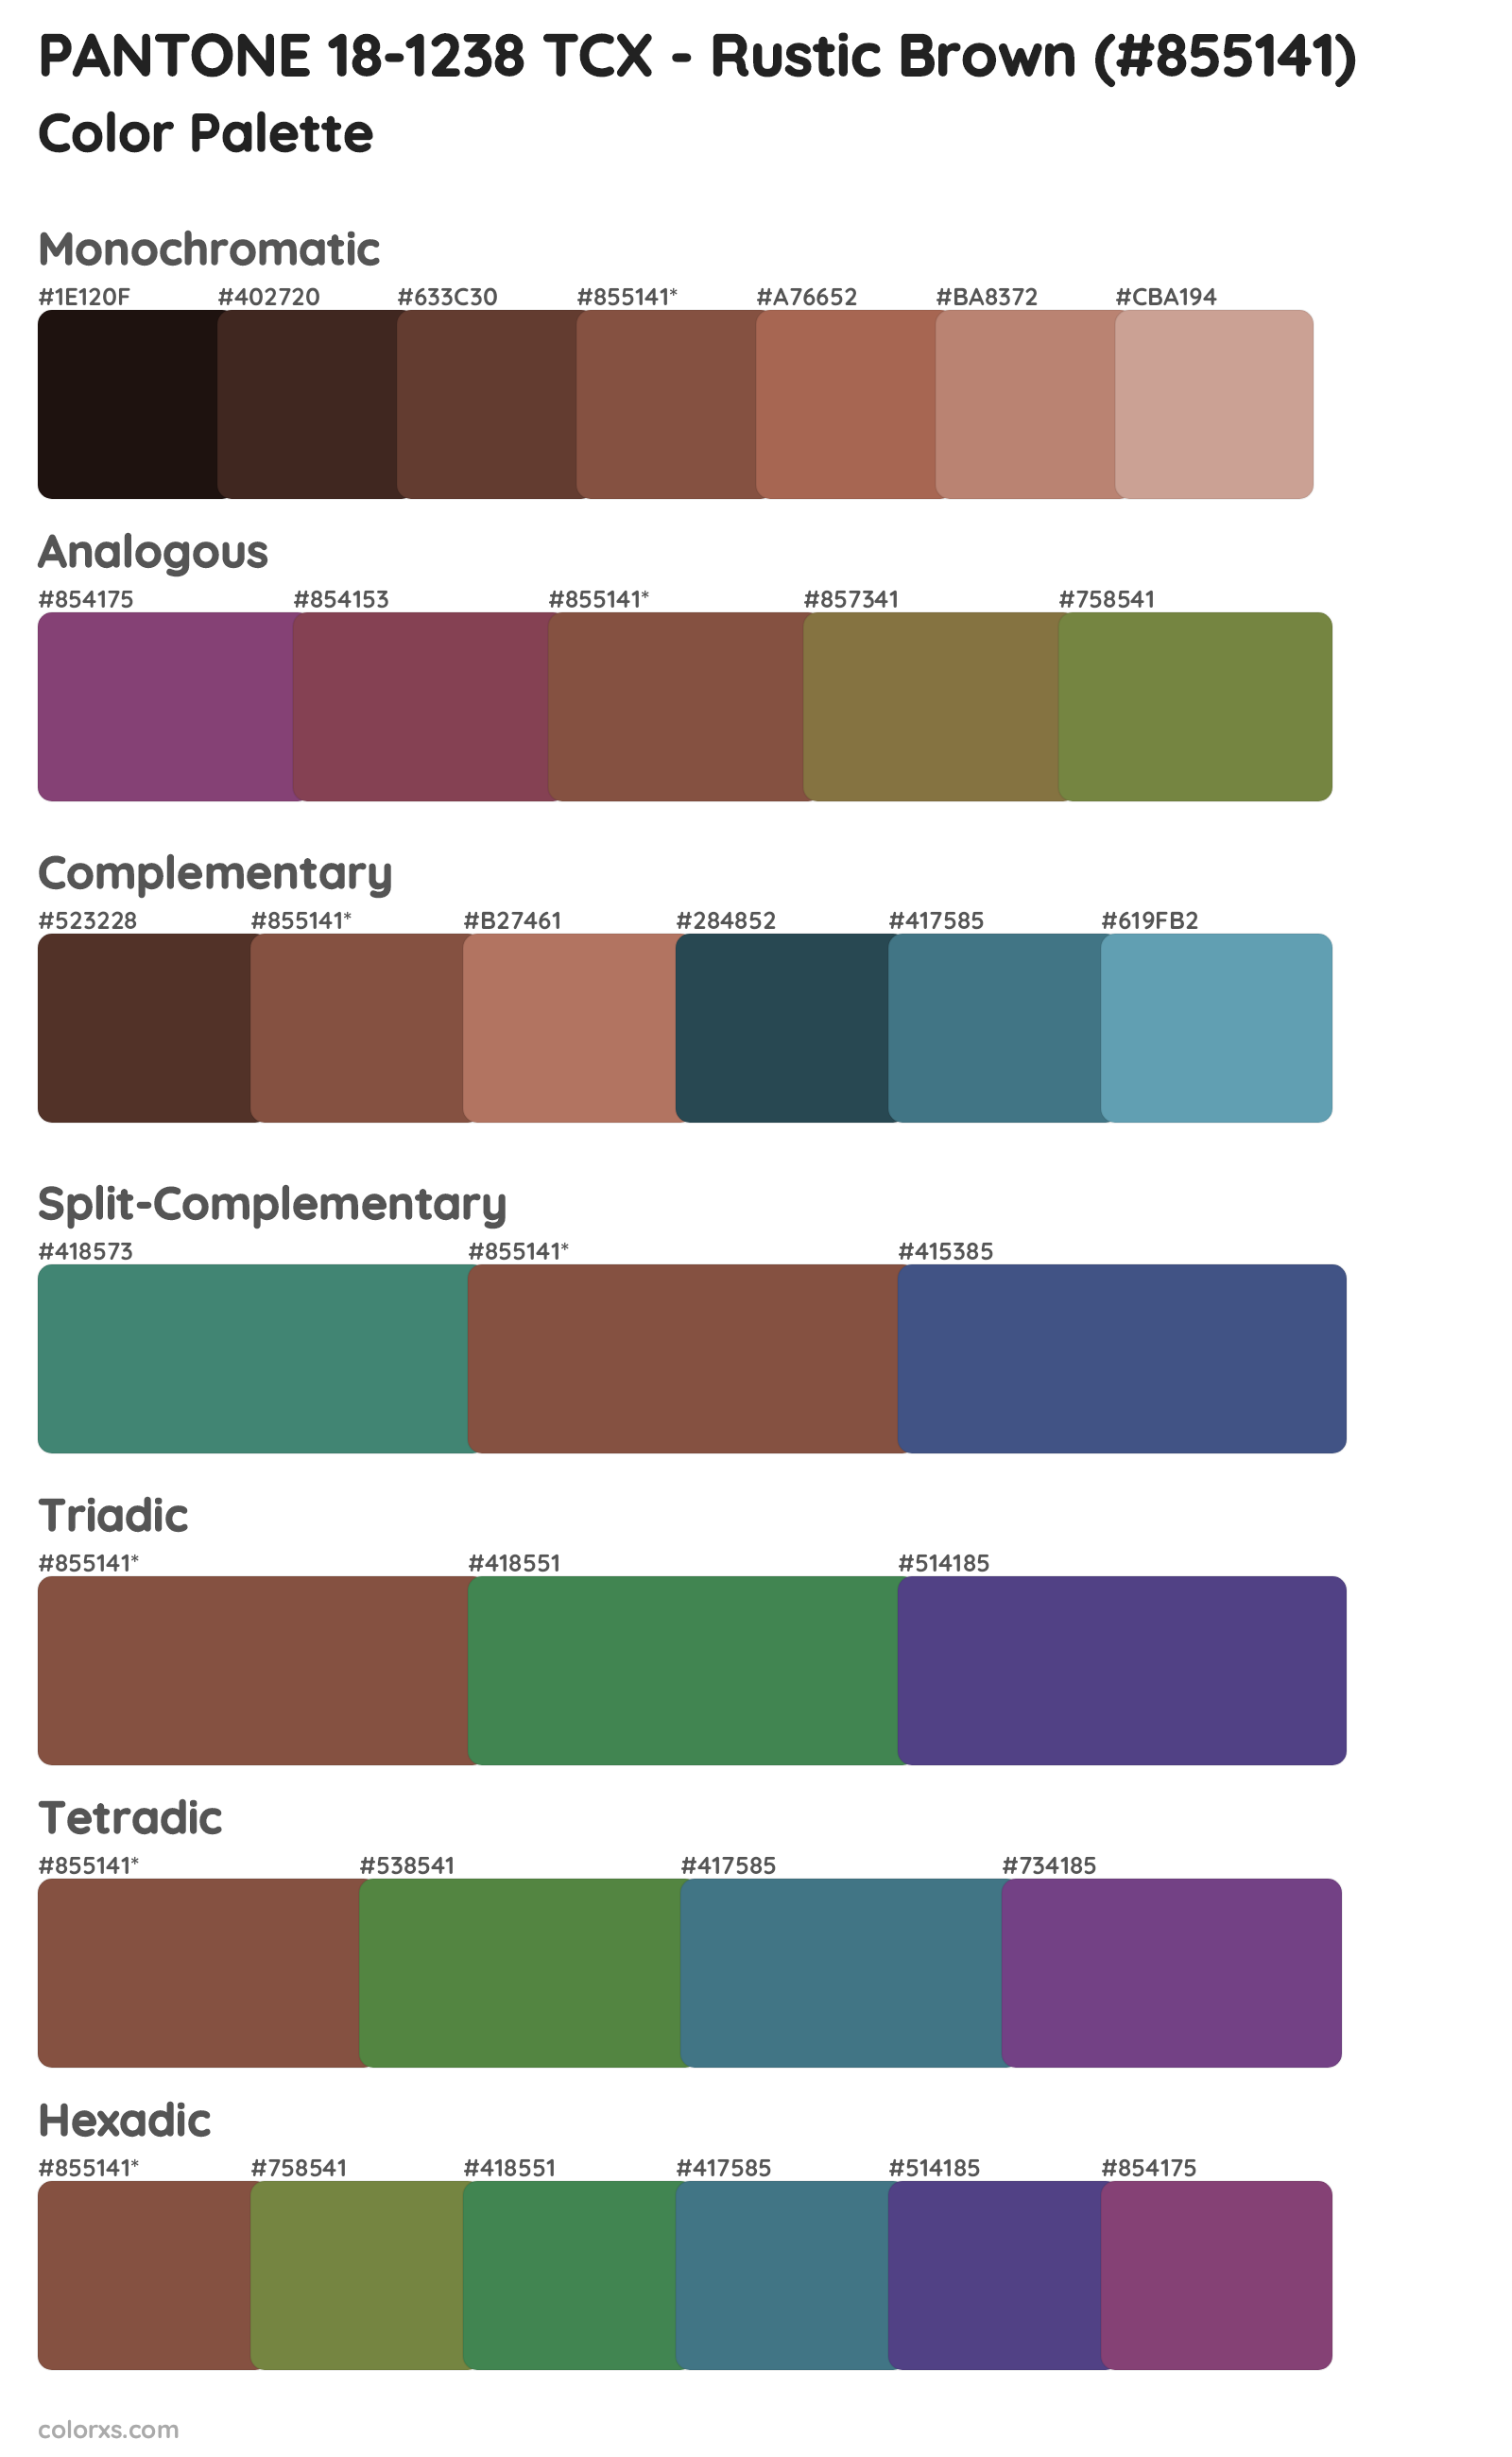 PANTONE 18-1238 TCX - Rustic Brown Color Scheme Palettes